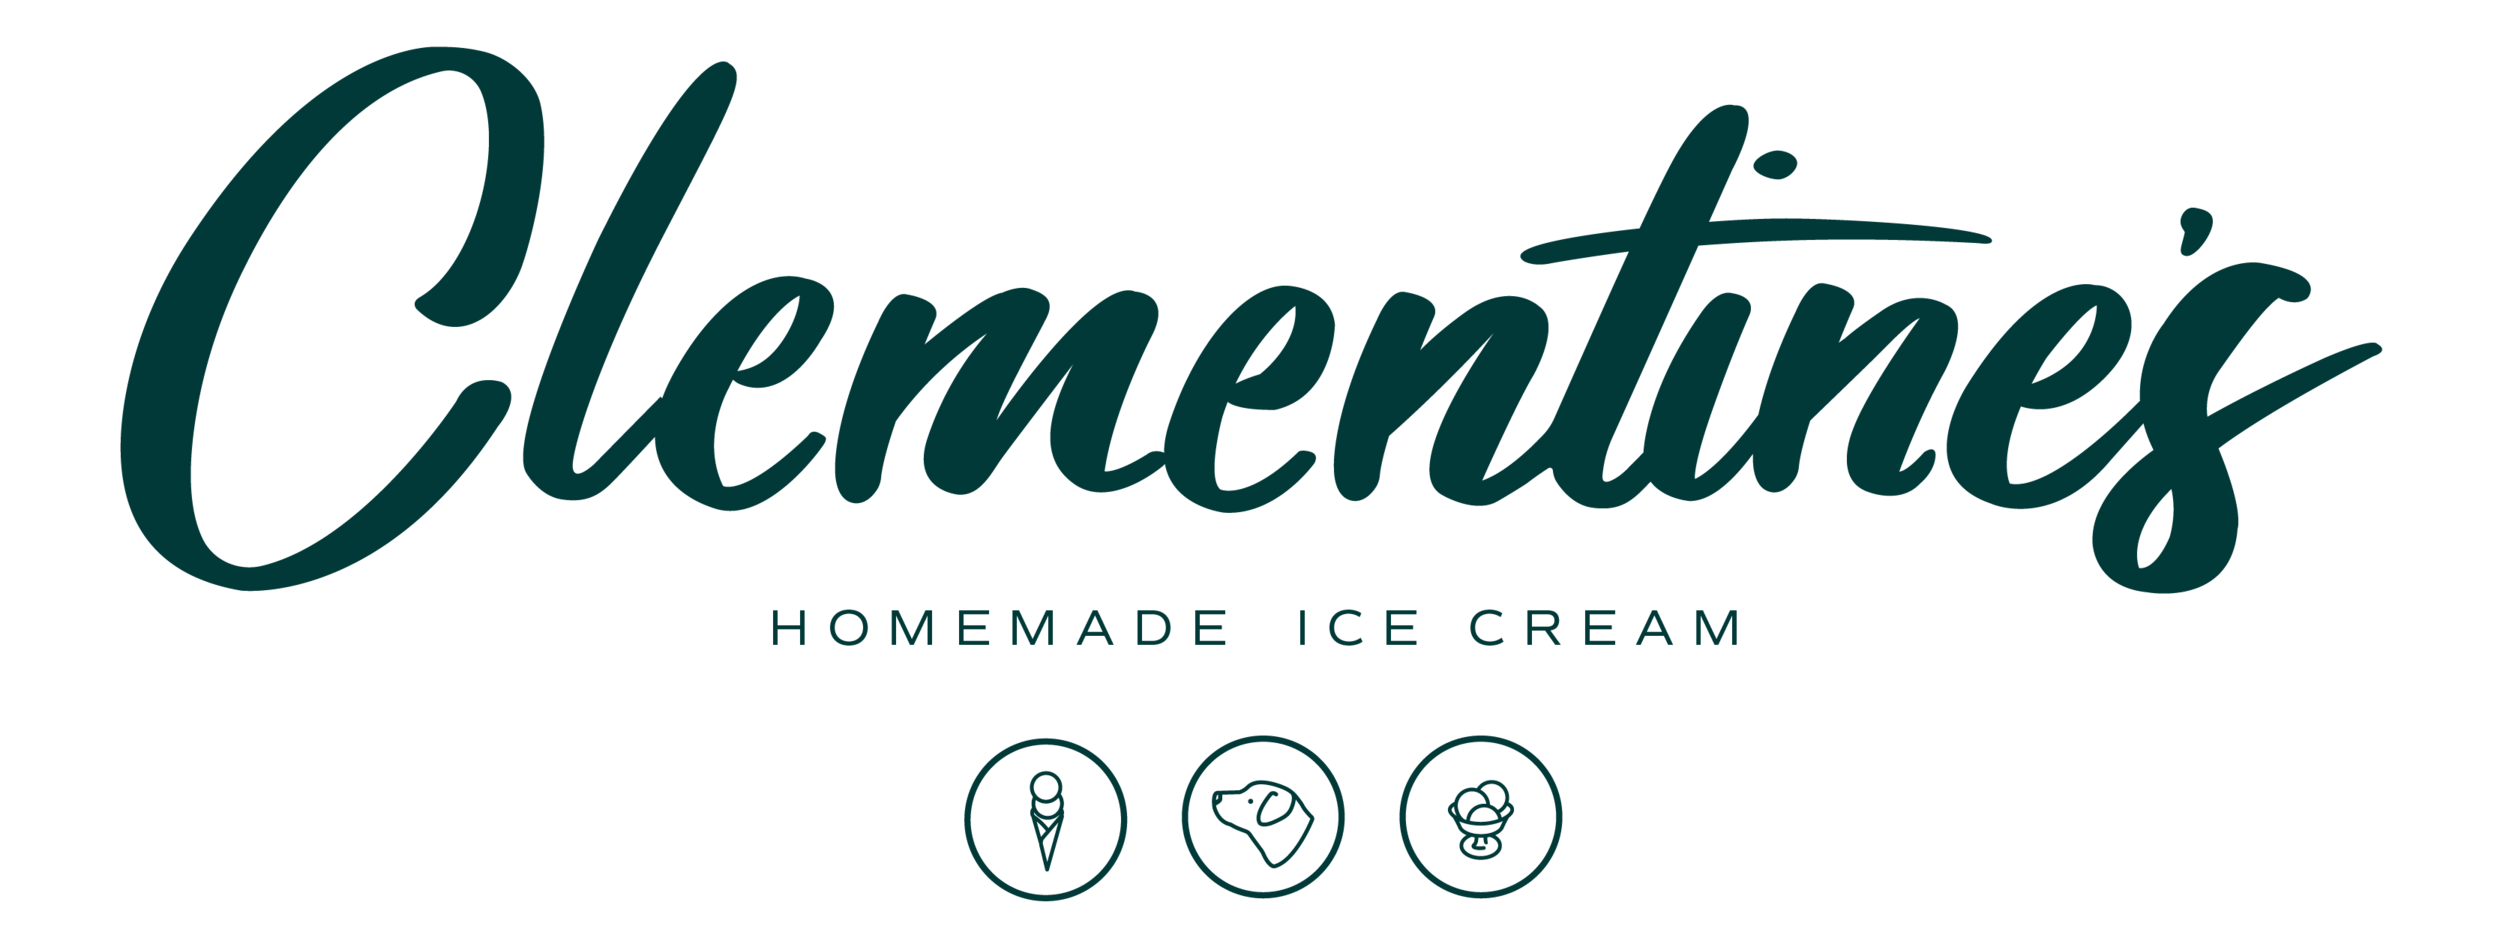 Clementine&#39;s Homemade Ice Cream